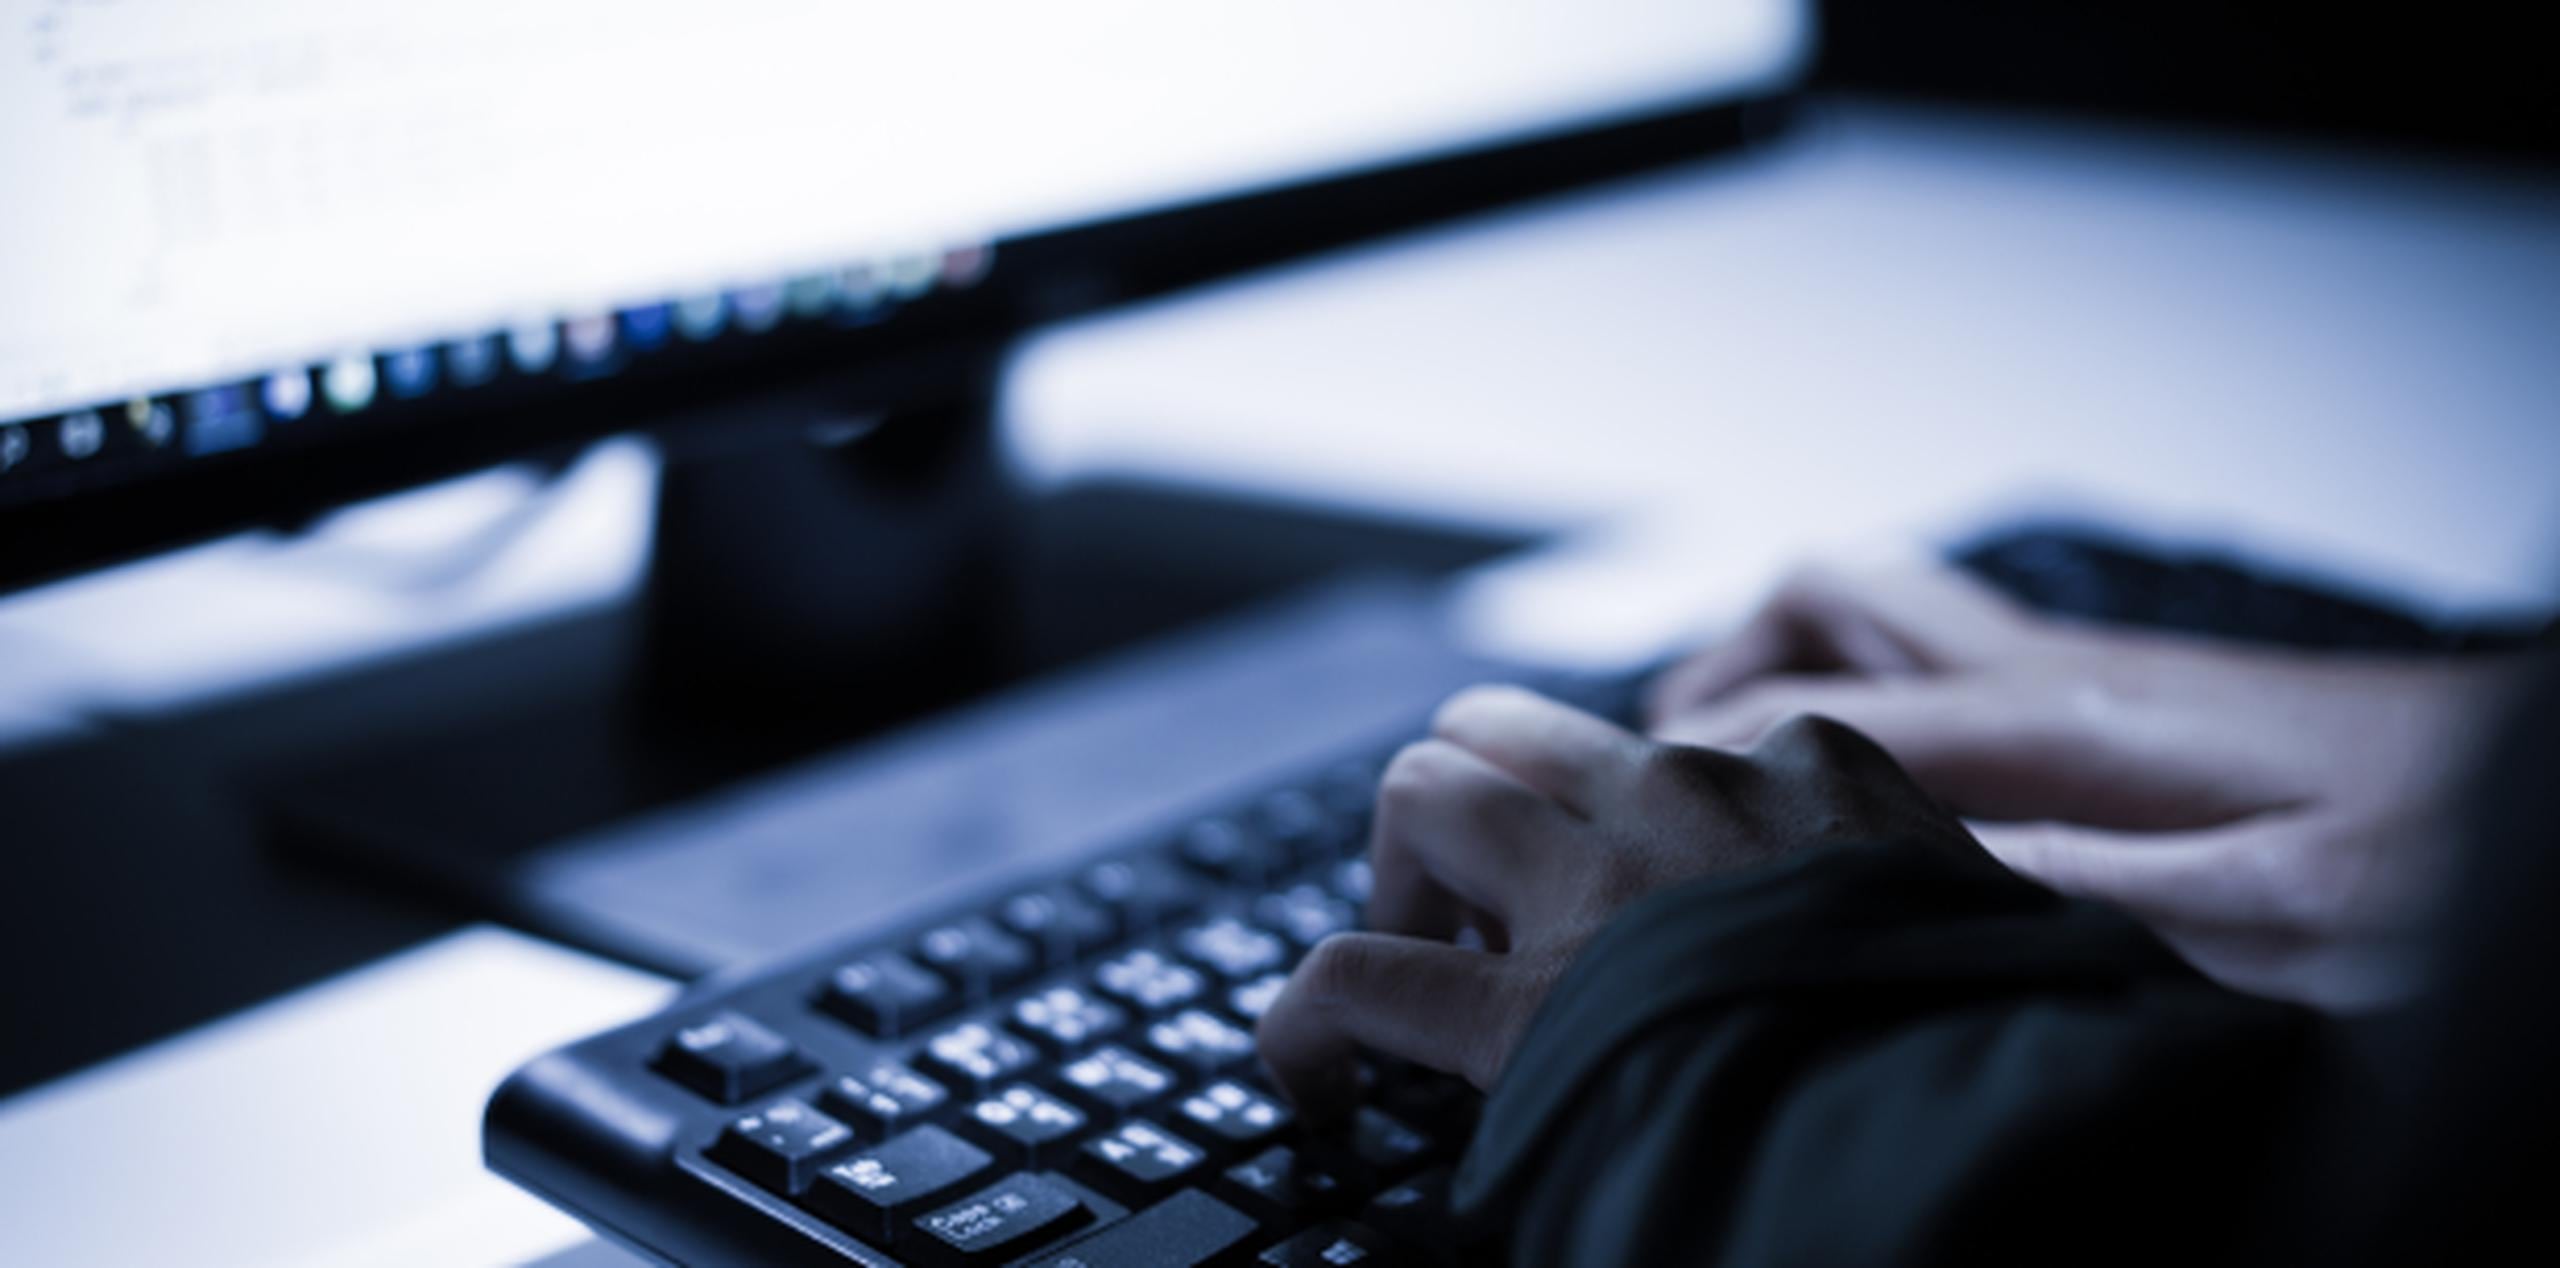 Las actualizaciones de sistemas operativos pueden salvarte de ser víctima del ciberataque. (Shutterstock)